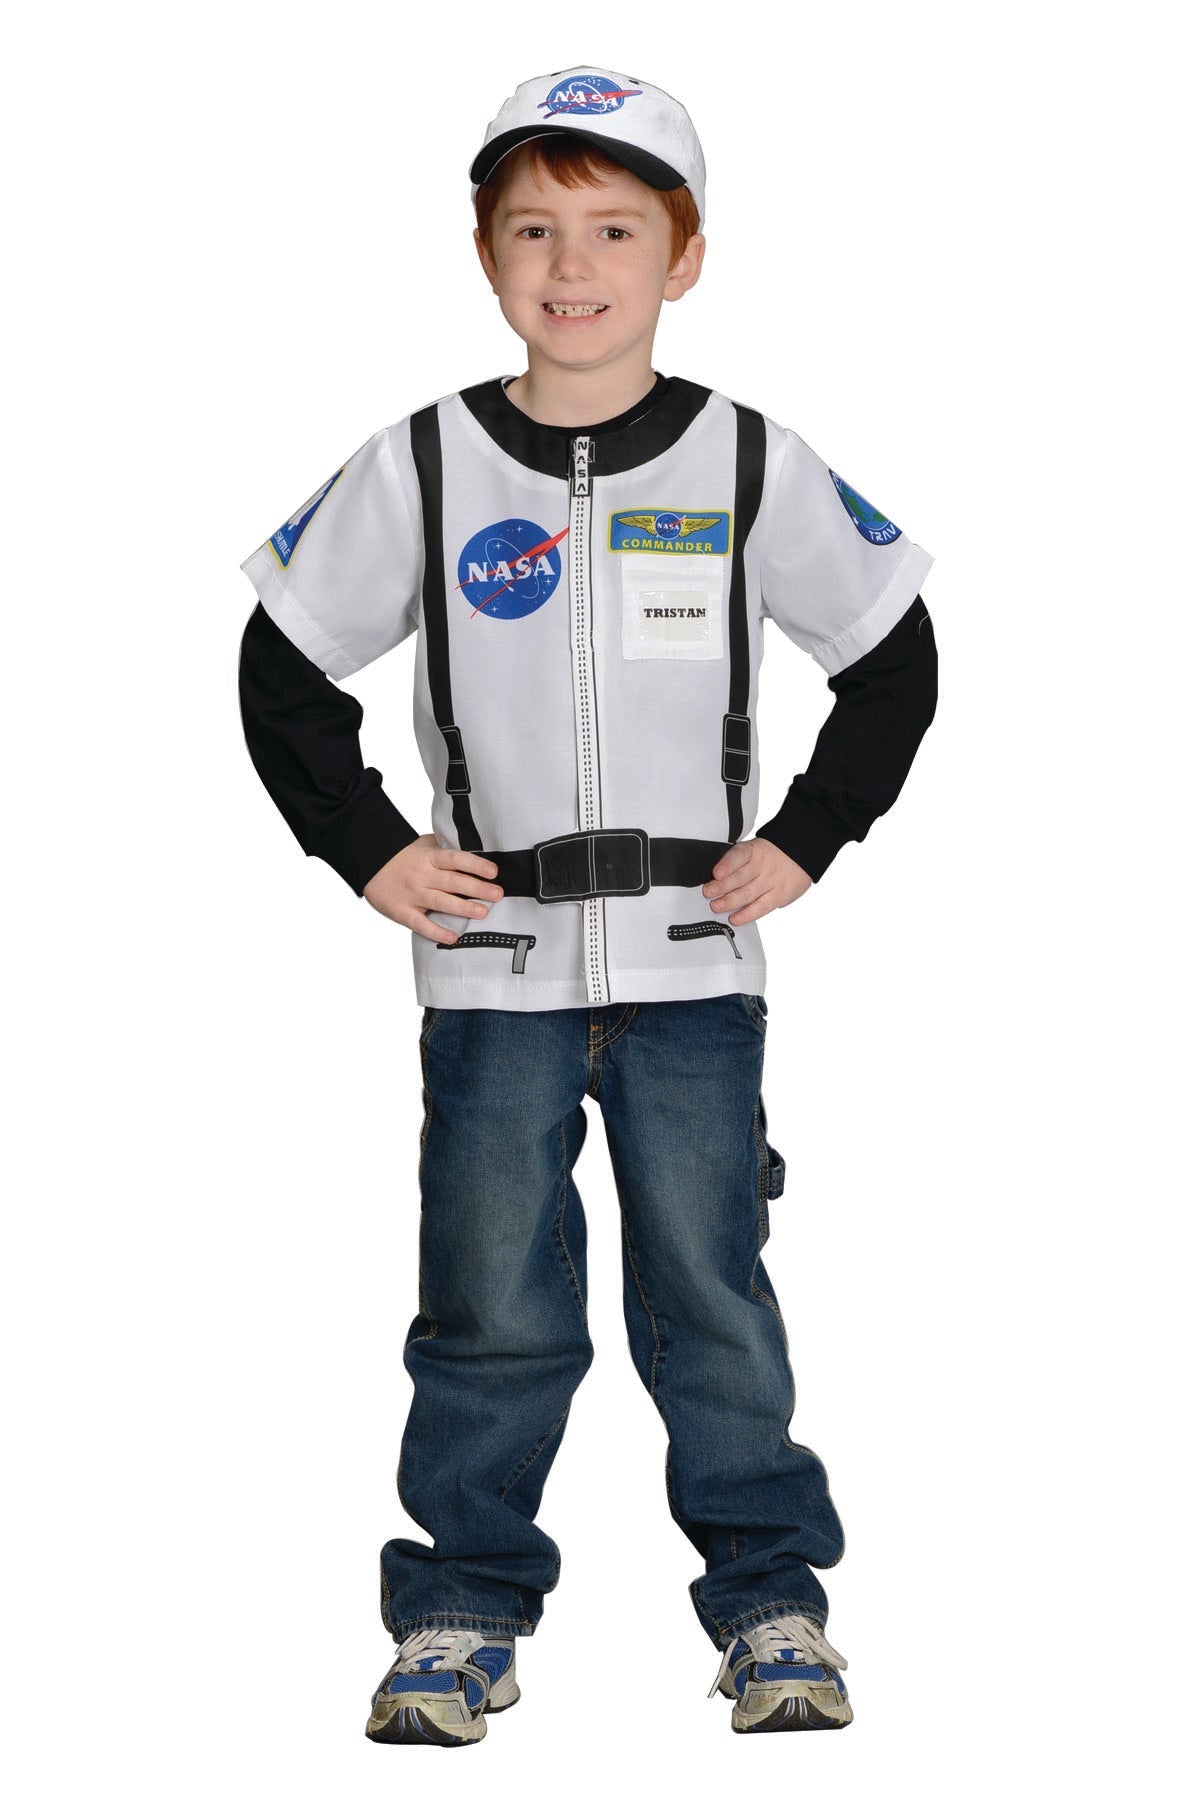 My 1st Career Gear- Astronaut